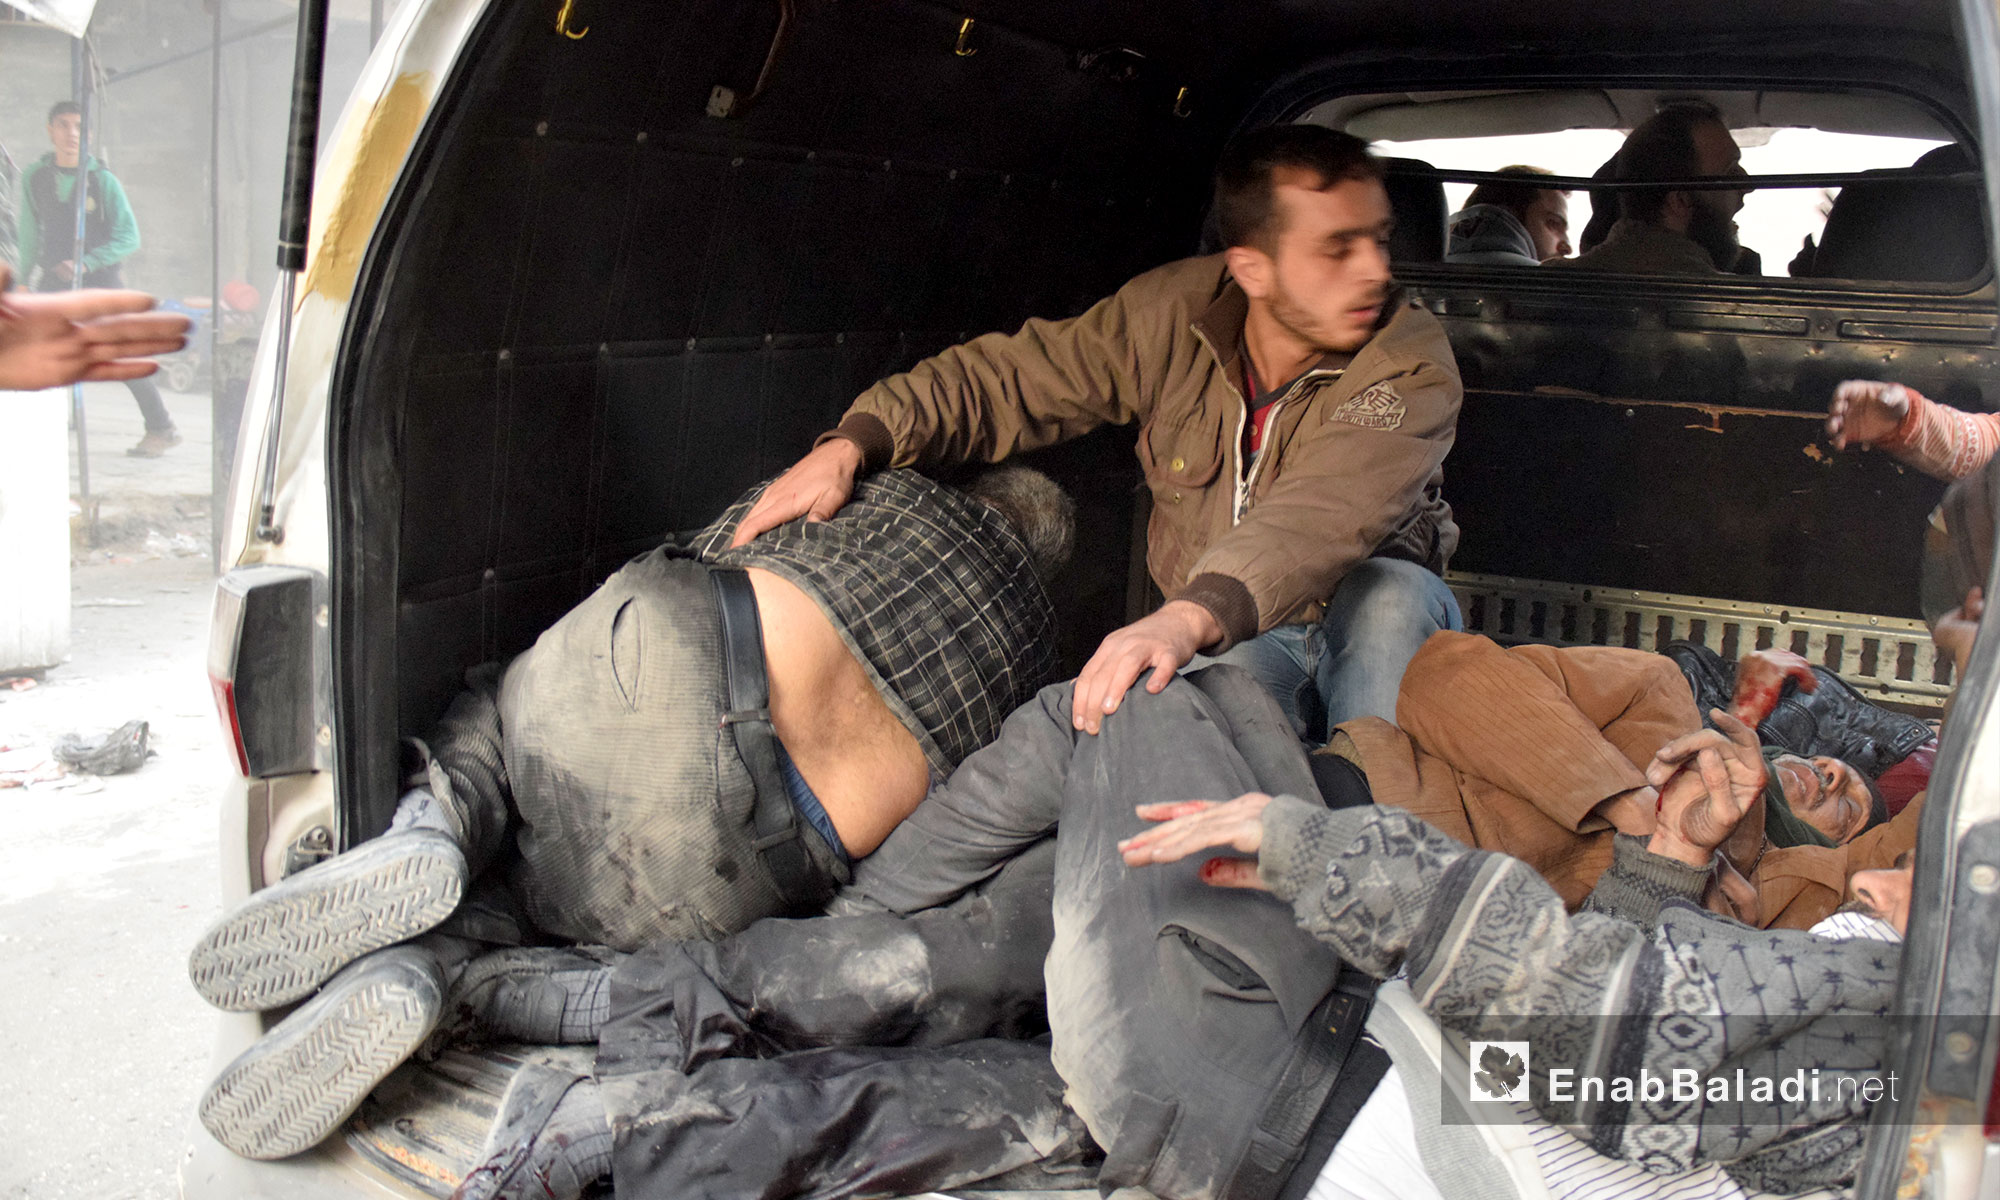 سيارة تسعف المصابين جراء القصف في حي الشعار بحلب - 20 تشرين الثاني 2016 (عنب بلدي)